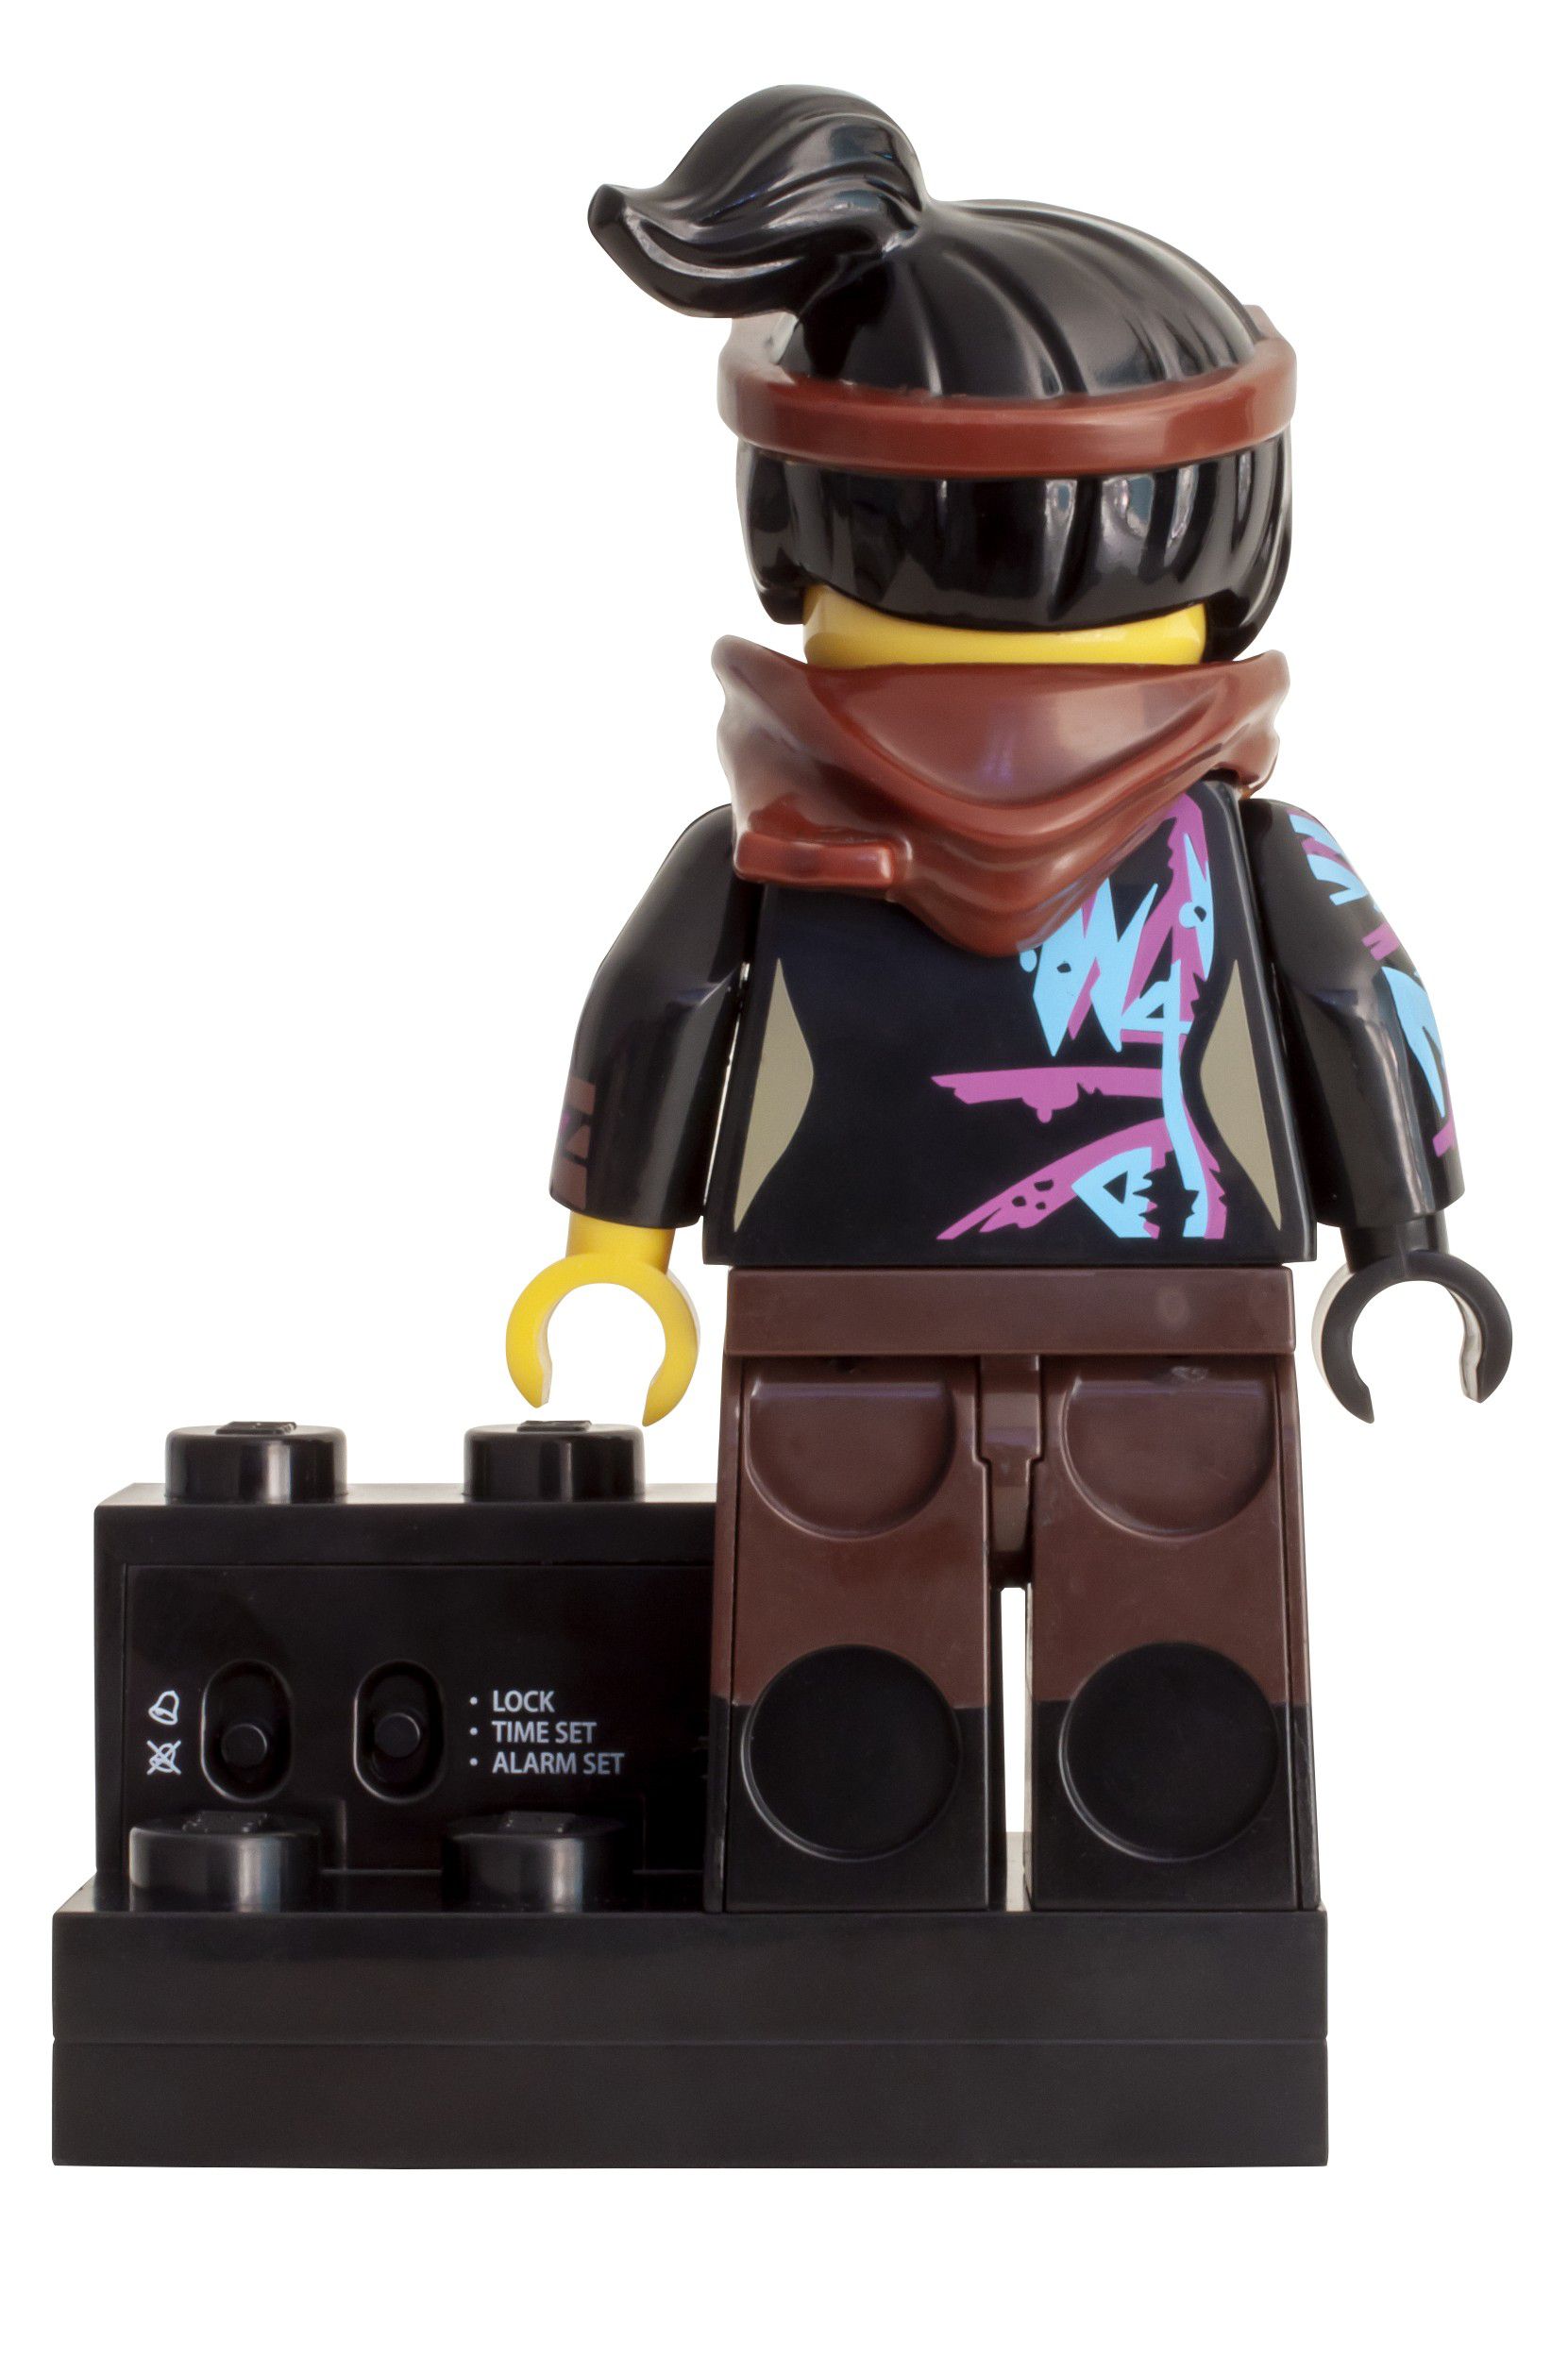 LEGO Gear 5005699 THE LEGO® MOVIE 2™ Wyldstyle-Wecker LEGO_5005699_alt2.jpg